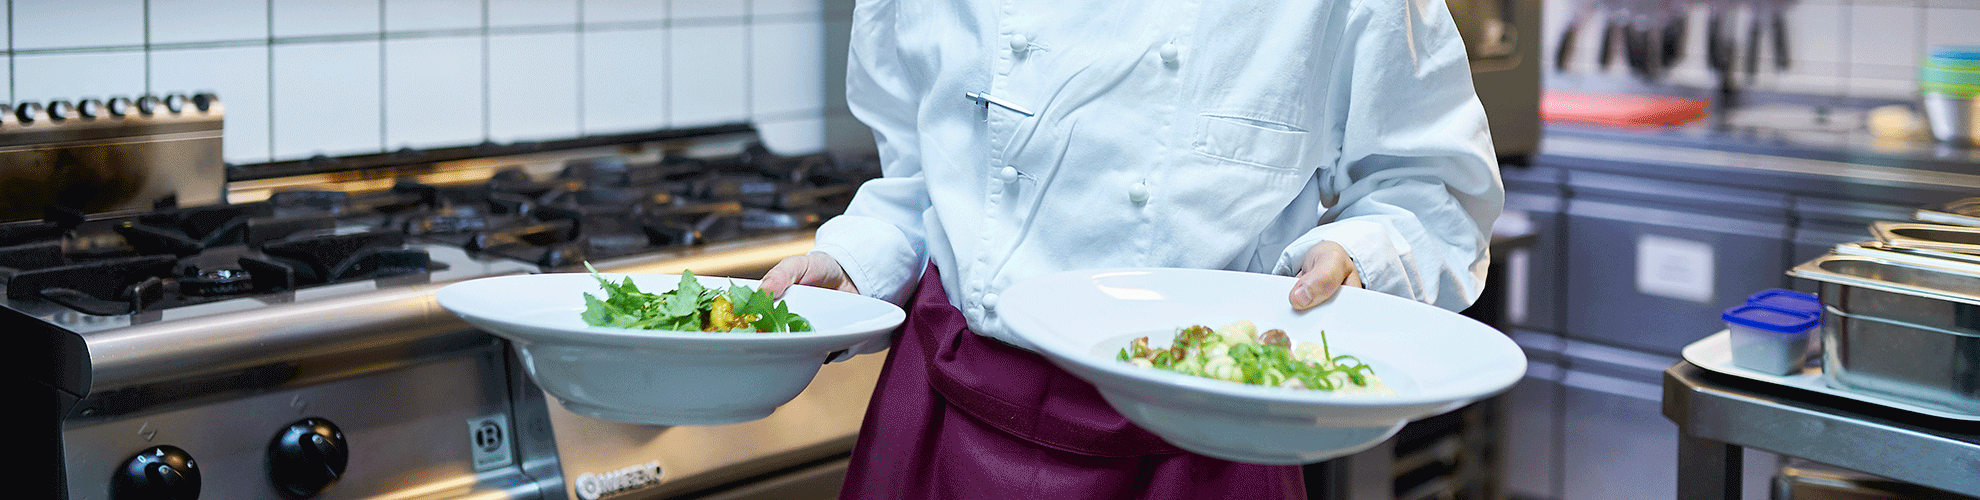 Mitarbeiterin bringt zwei Teller mit Salat aus der Küche